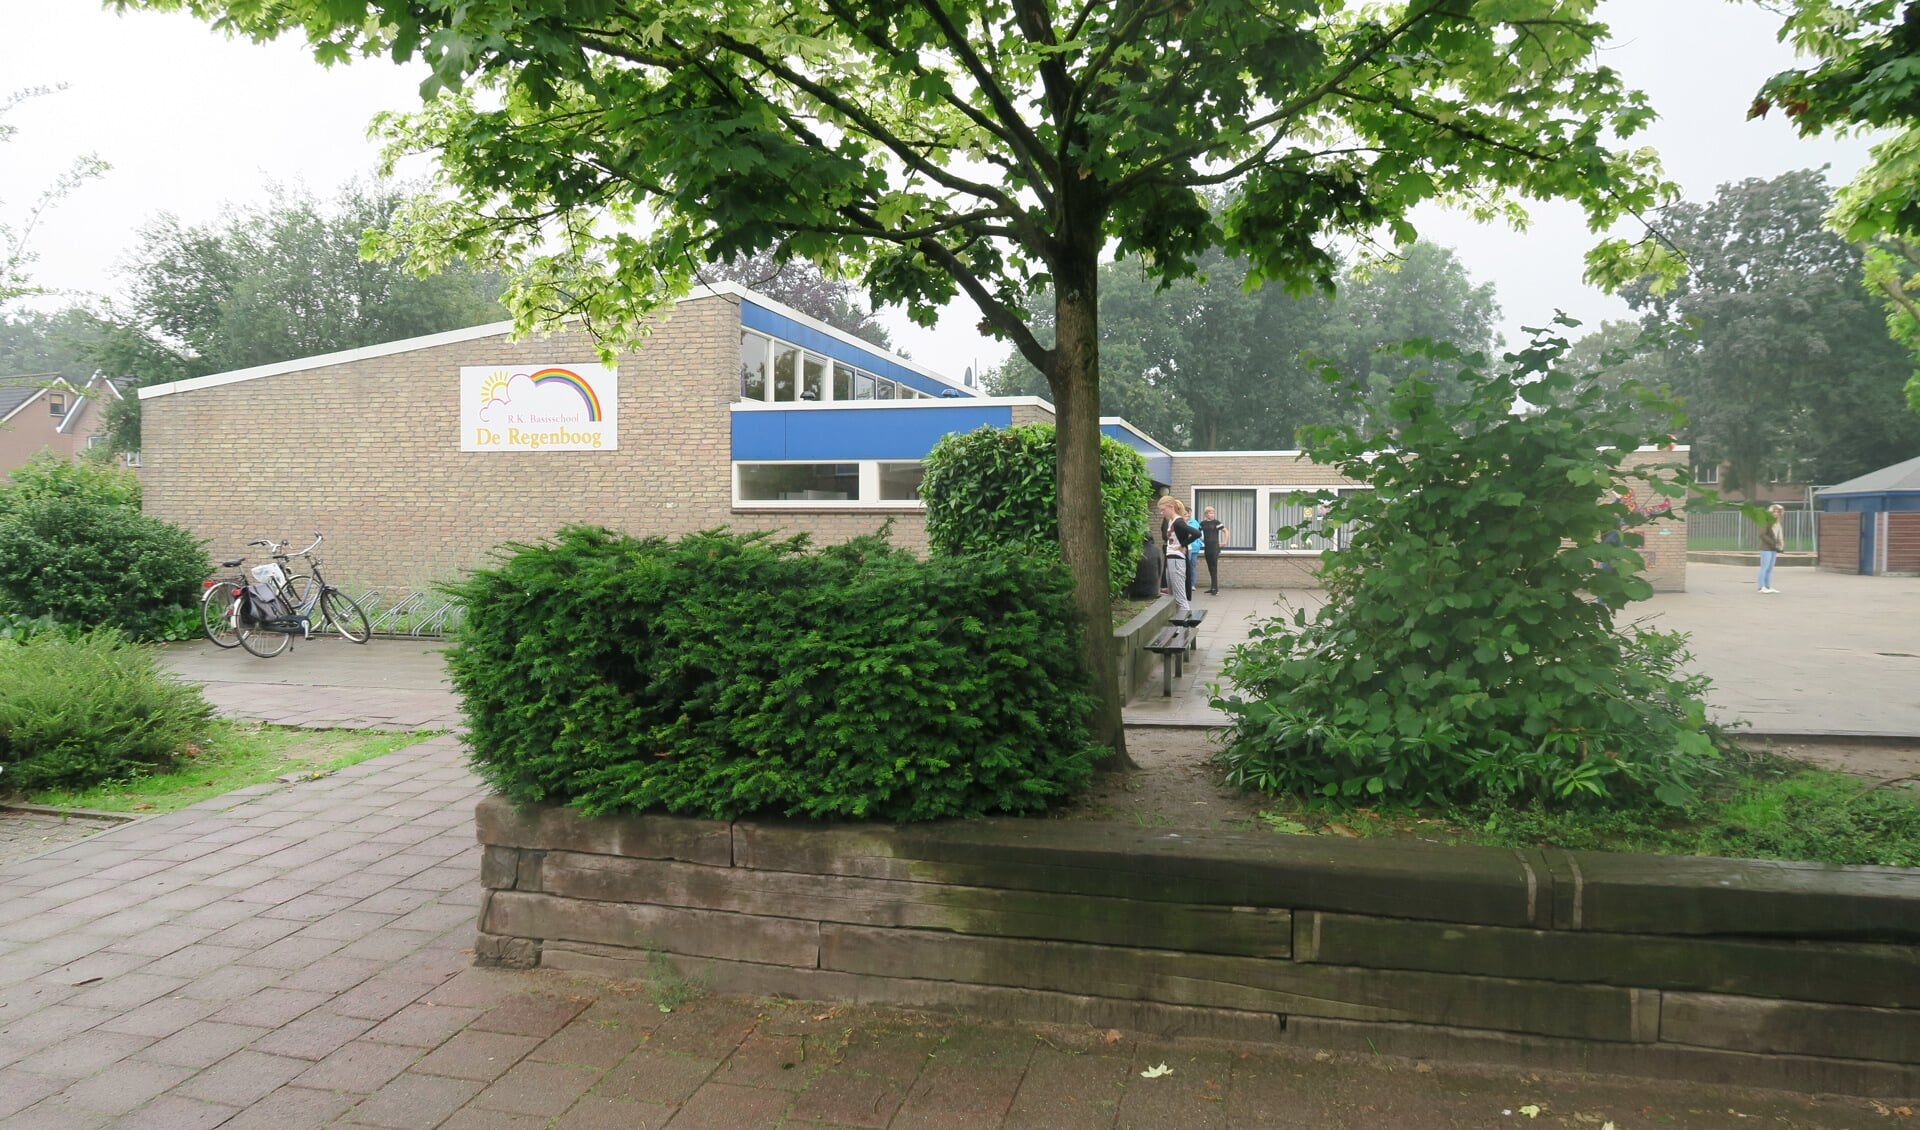 Basisschool De Regenboog. Foto: Theo Huijskes/archief Achterhoek Nieuws